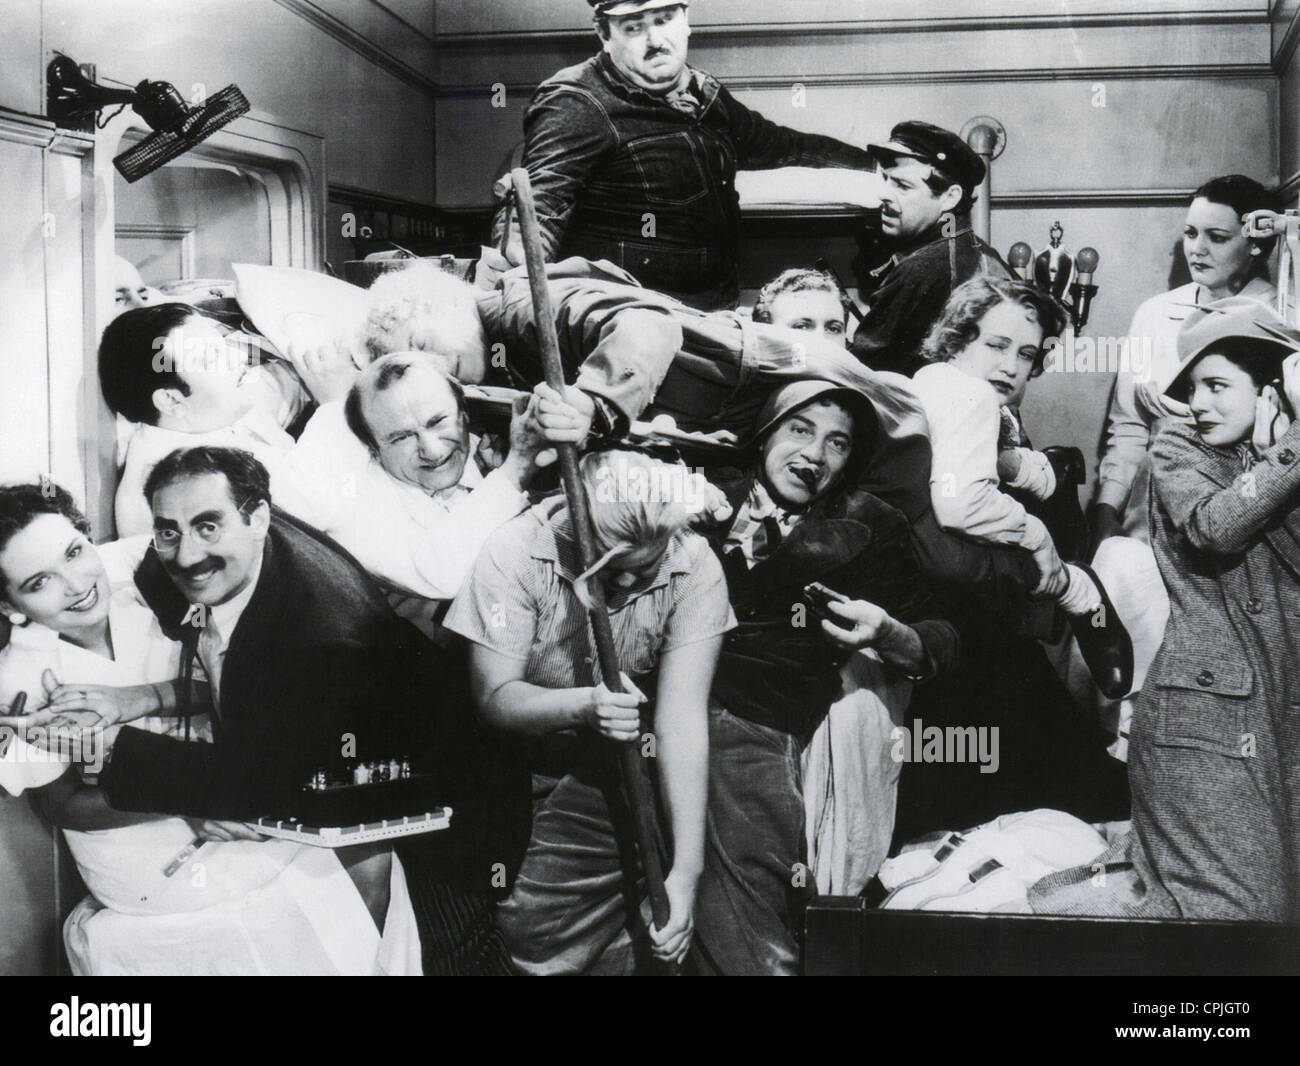 Una notte all'OPERA 1935 MGM film commedia con Groucho Marx a sinistra Foto Stock